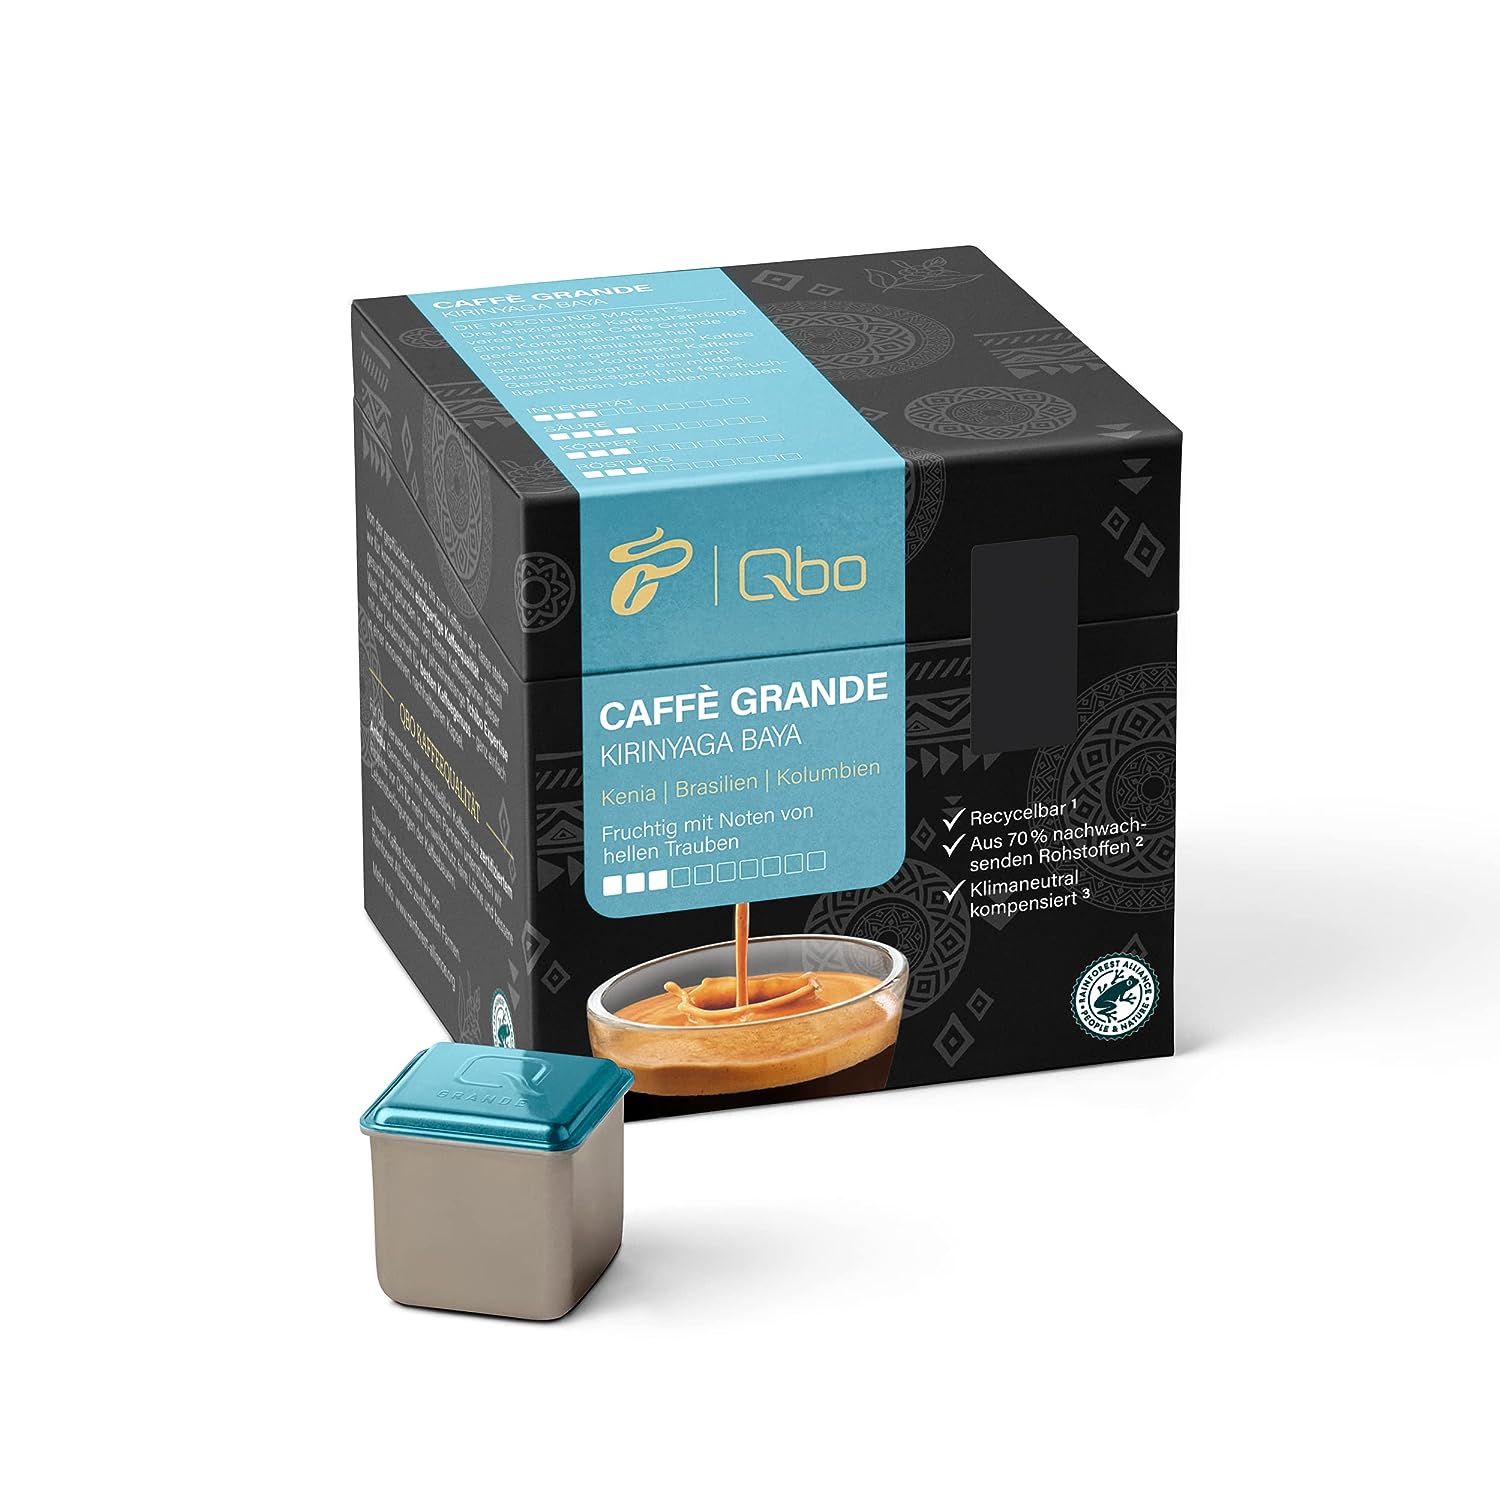 Tchibo Qbo Caffè Grande Kirinyaga Baya Premium Kaffeekapseln, 216 Stück – 8x27 Kapseln (Caffè Grande, Intensität 3/10, fruchtig), nachhaltig, aus 70% nachwachsenden Rohstoffen